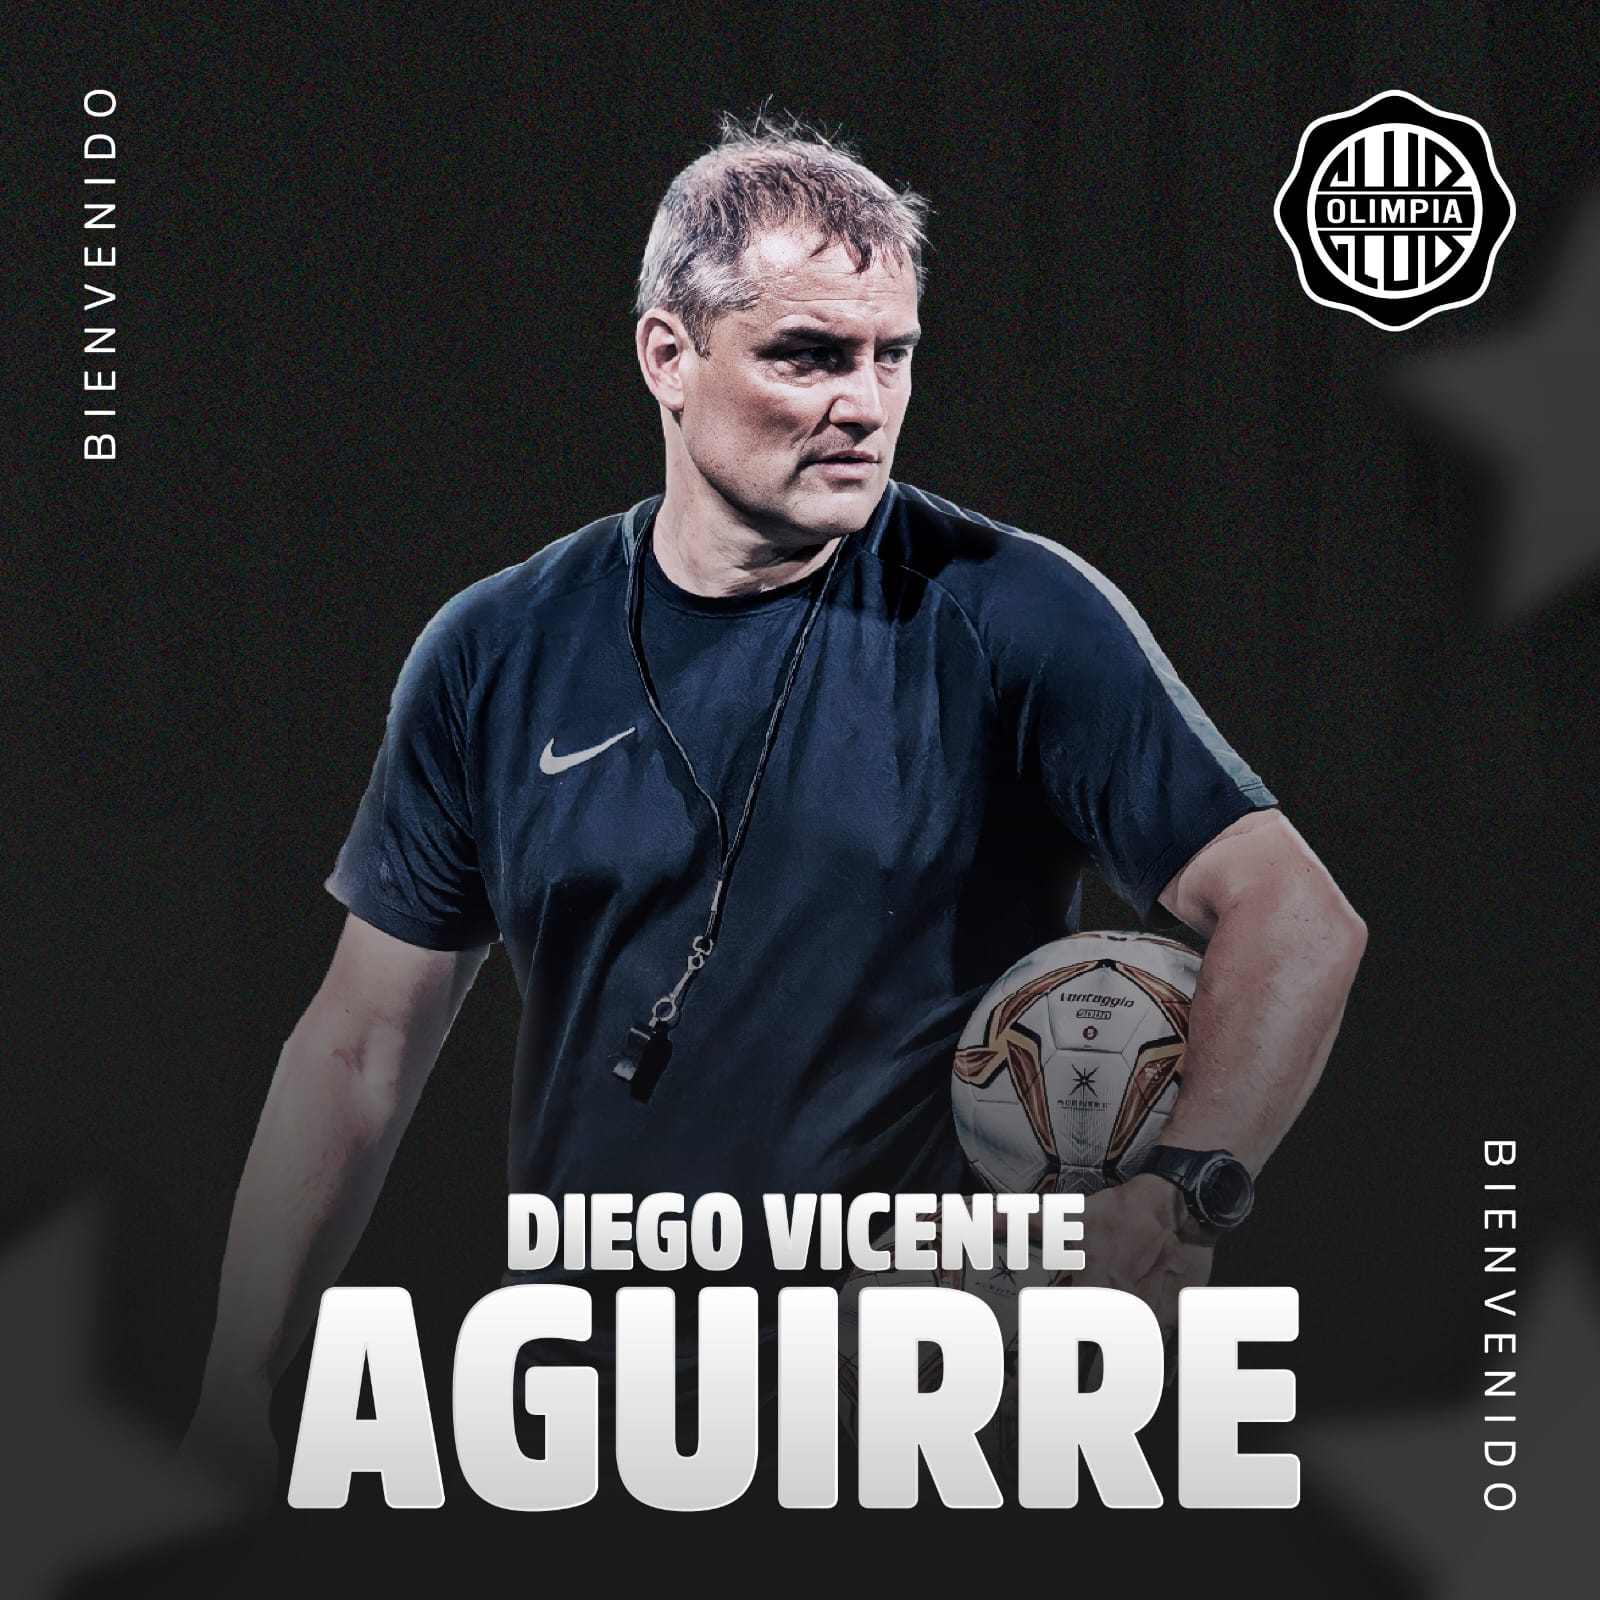 Diego Aguirre nuevo entrenador de Olimpia de Paraguay: La selección me generaba ilusión, es parte de la carrera. Me dolió no ser nombrado”